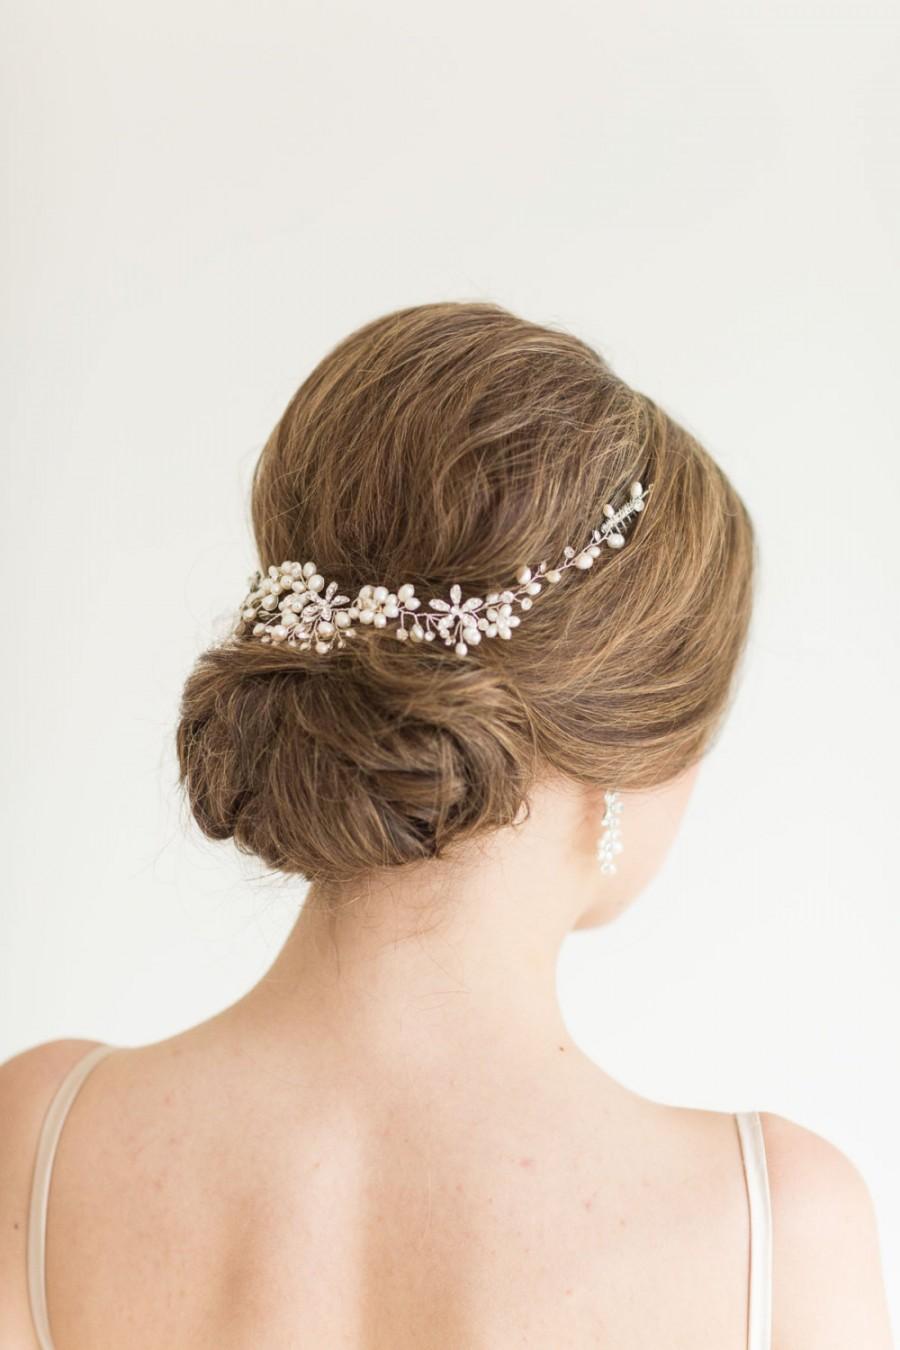 Wedding - Wedding Hair Vine,  Bridal Head Piece, Bridal Hair Accessory